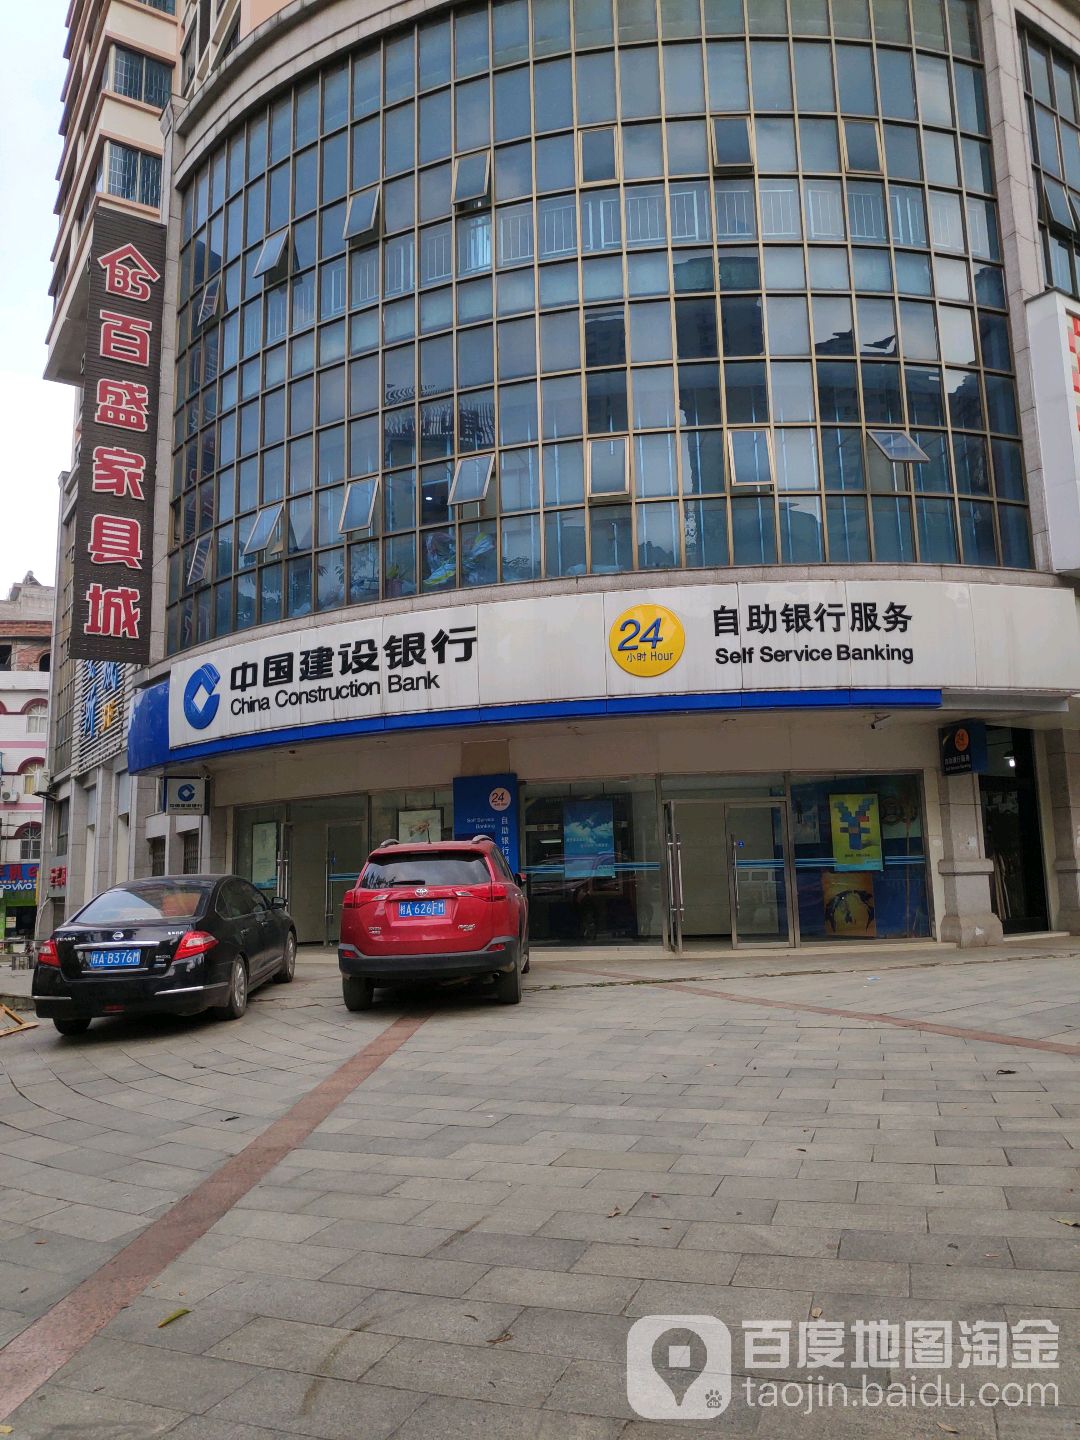 中國建設銀行24小時自助銀行服務(常青街)